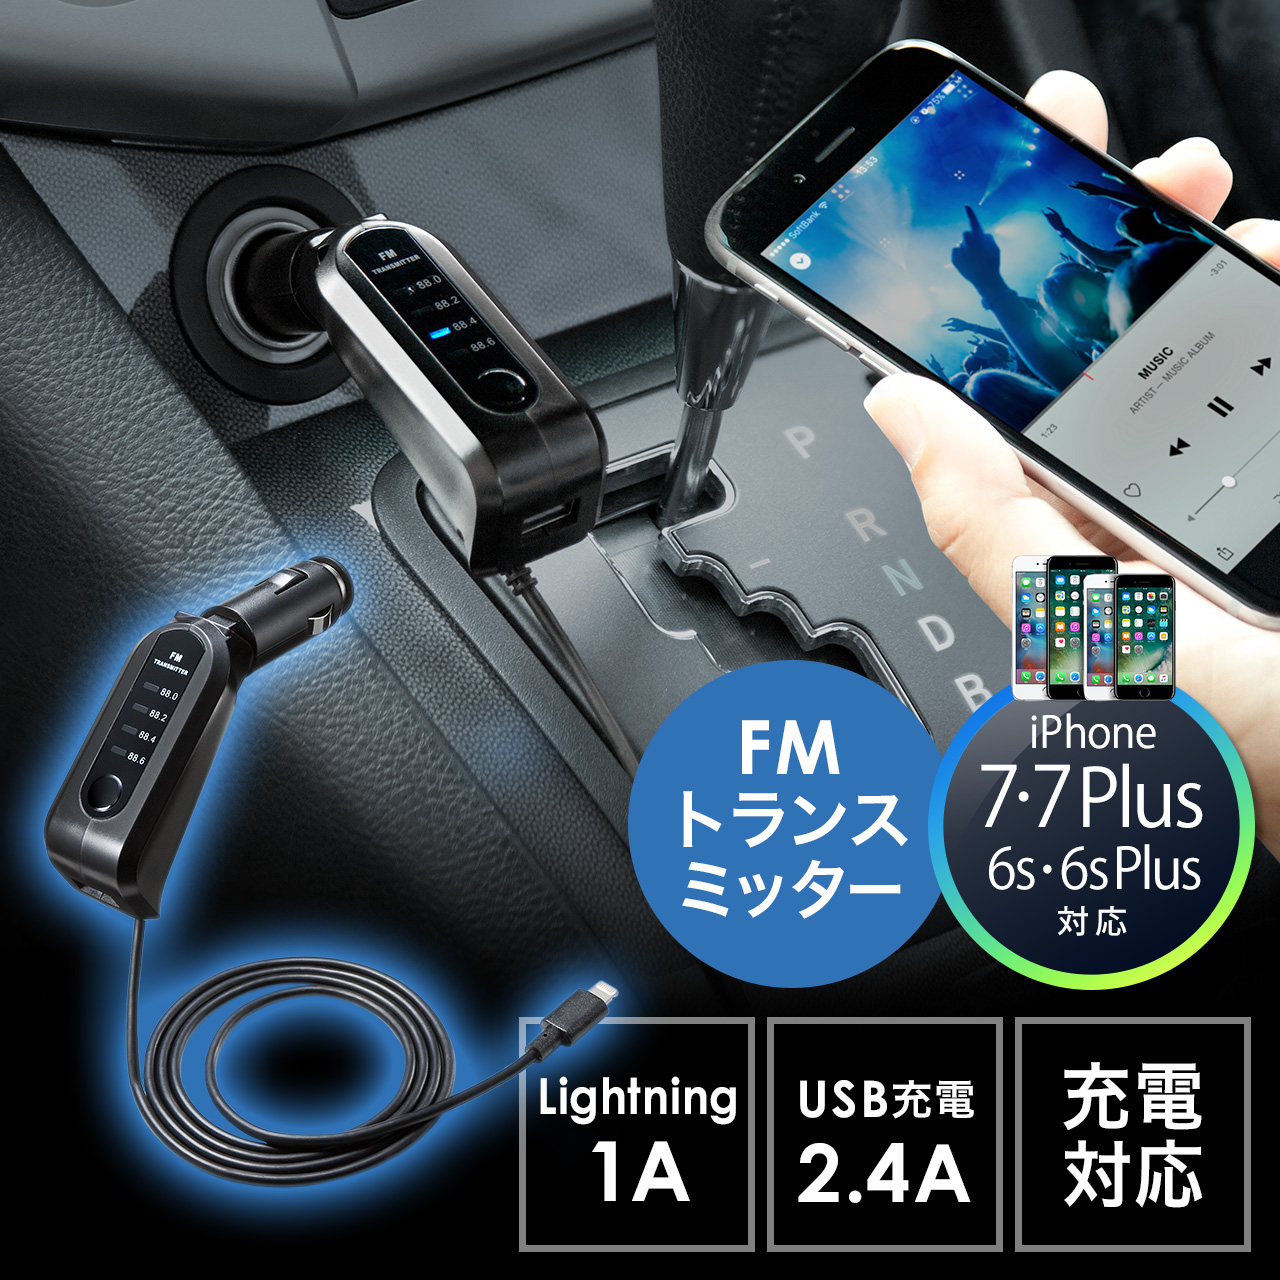 Fmトランスミッター Iphone 7 7 Plus対応 Lightning接続 充電対応 Usbポート2 4a対応 Mtf 100の販売商品 通販ならサンワダイレクト